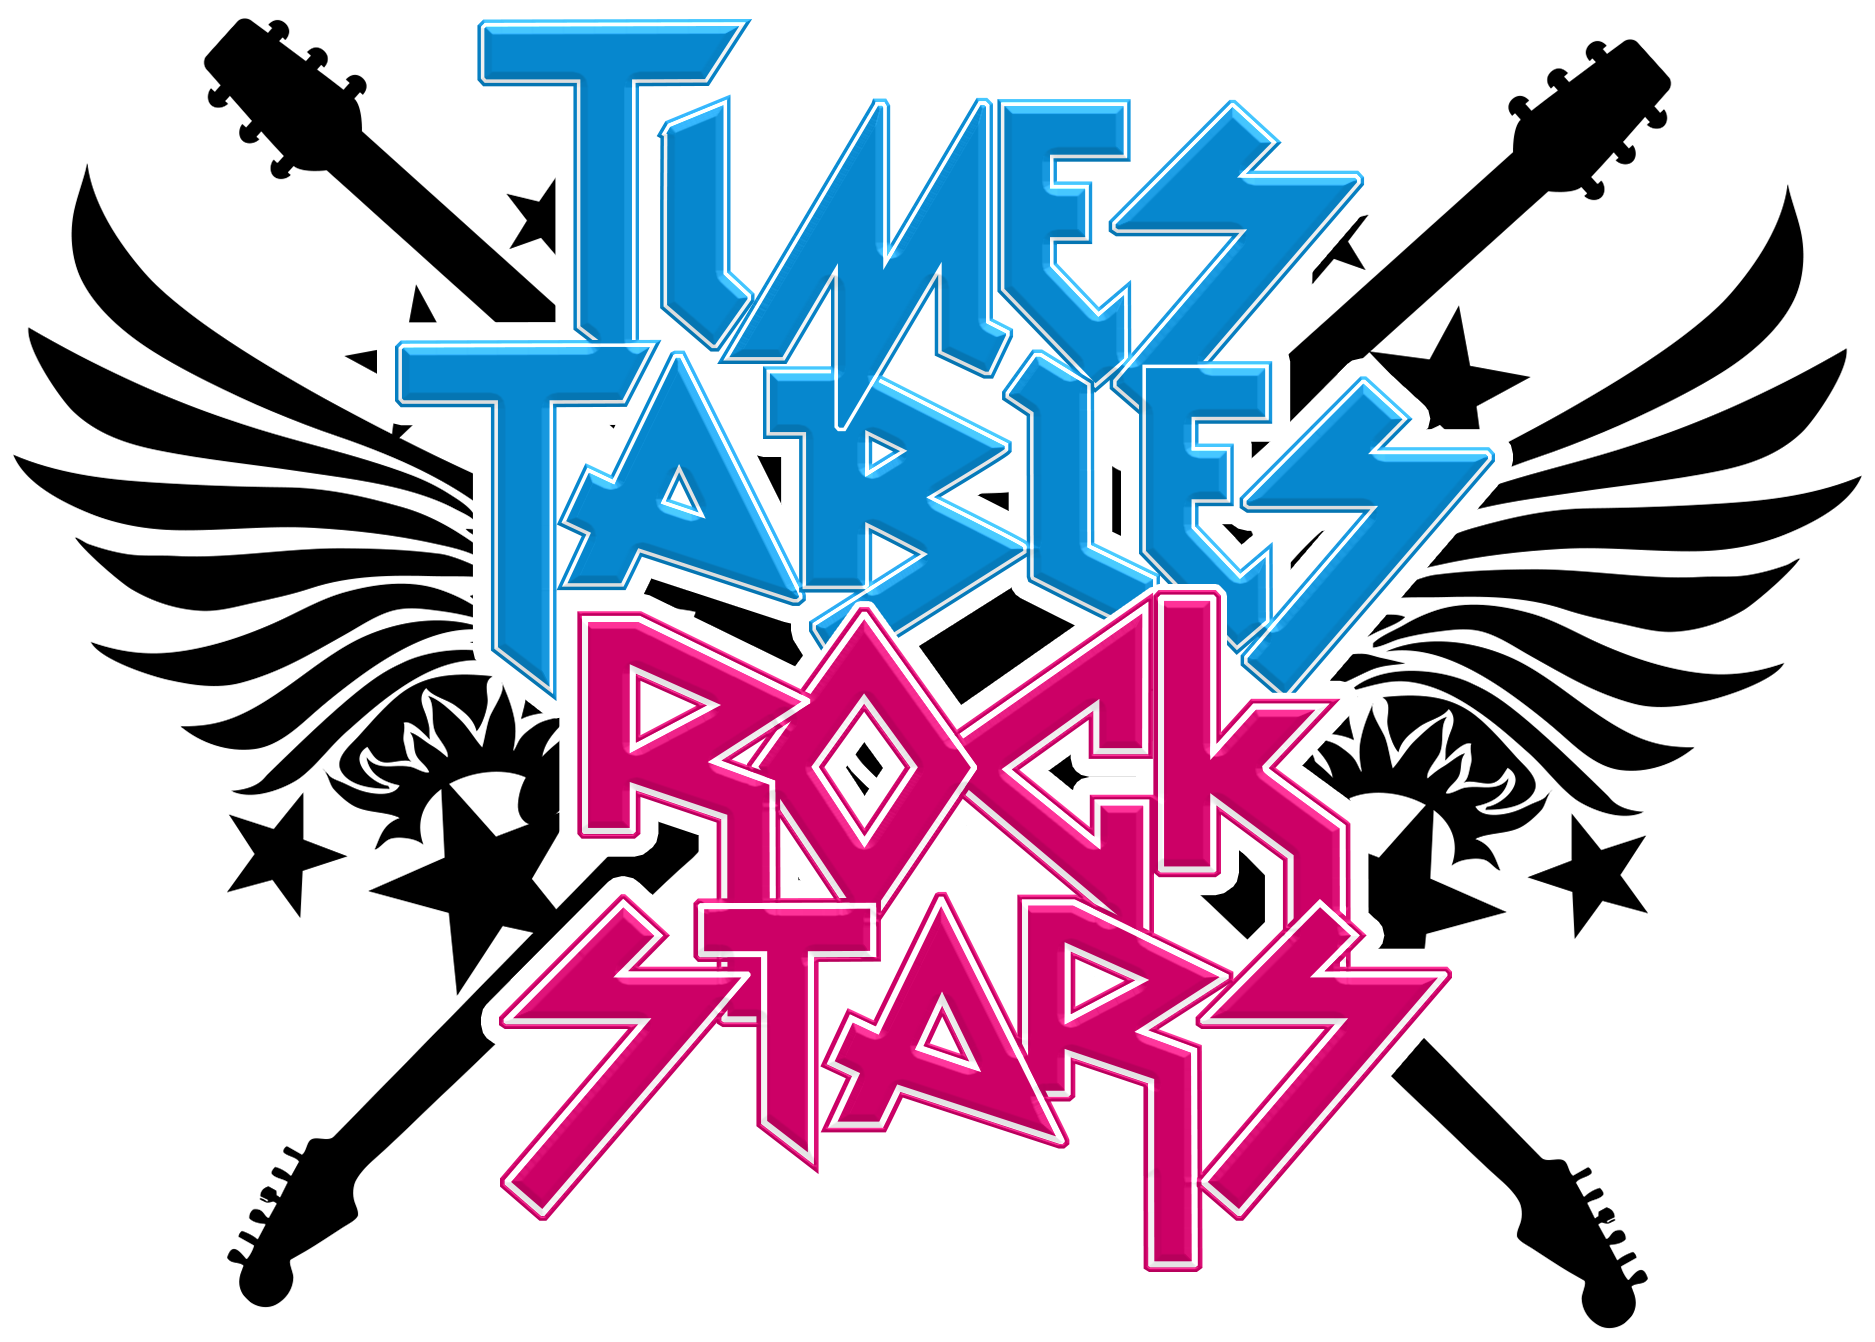 TTRS New Logo - Tagtiv8